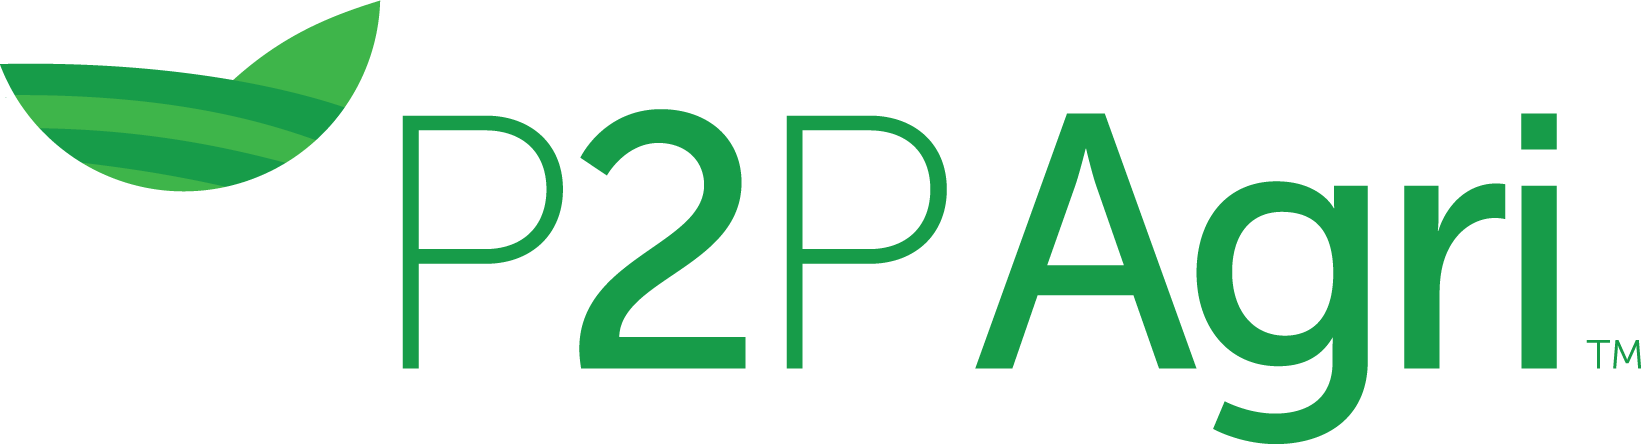 P2PAgri logo